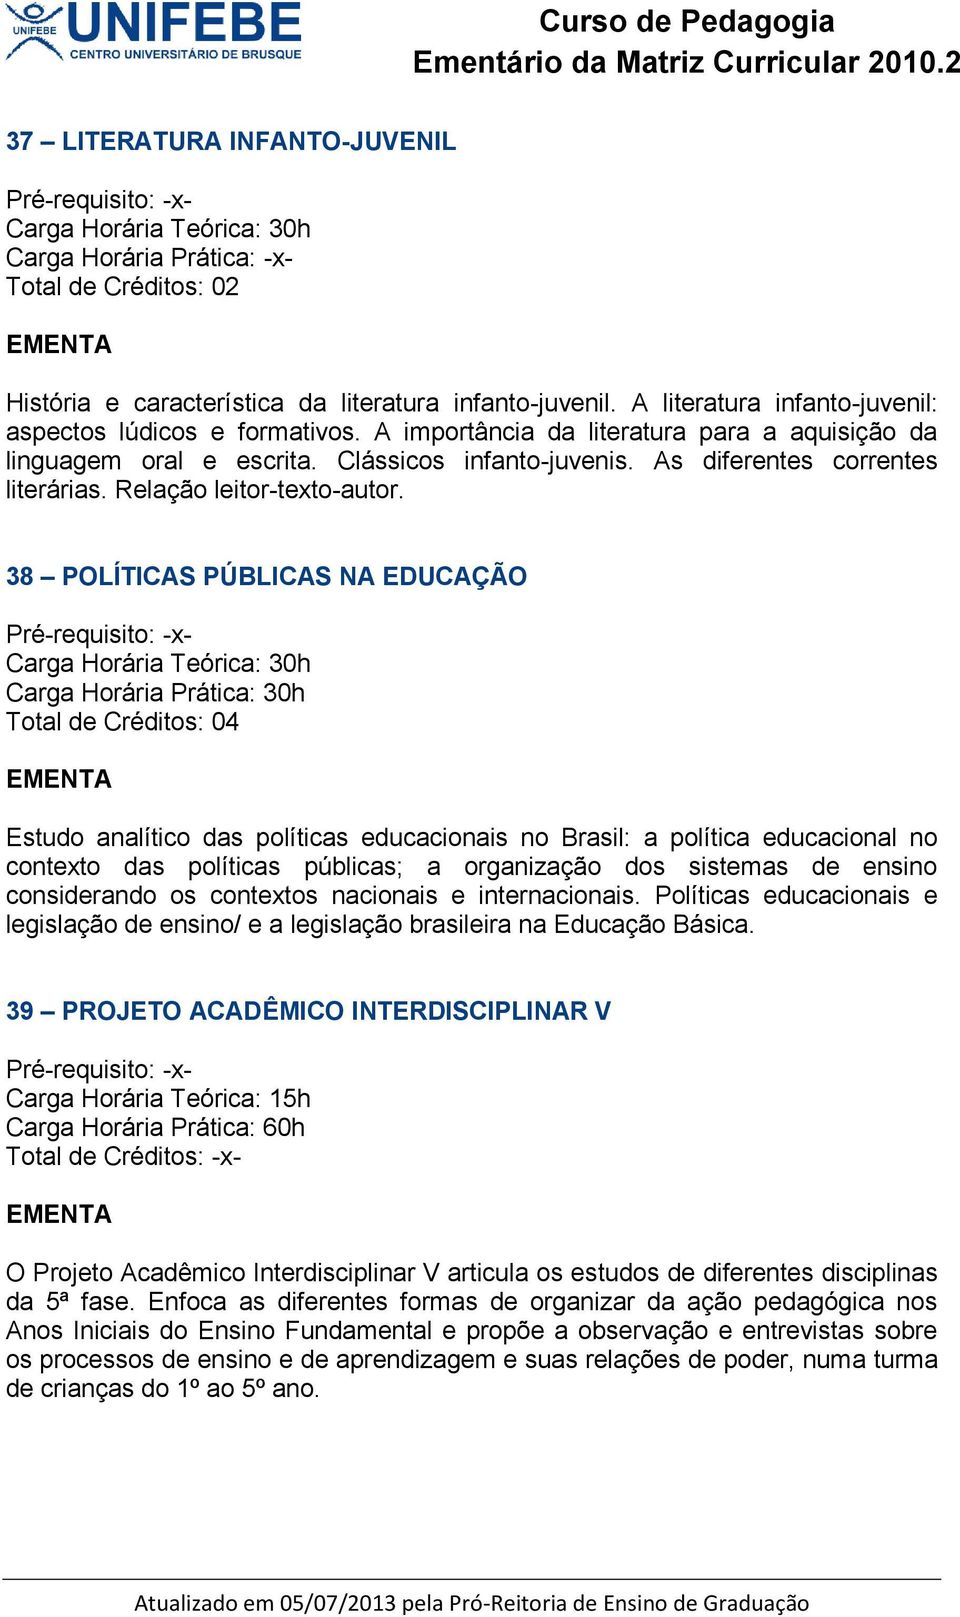 38 POLÍTICAS PÚBLICAS NA EDUCAÇÃO Estudo analítico das políticas educacionais no Brasil: a política educacional no contexto das políticas públicas; a organização dos sistemas de ensino considerando